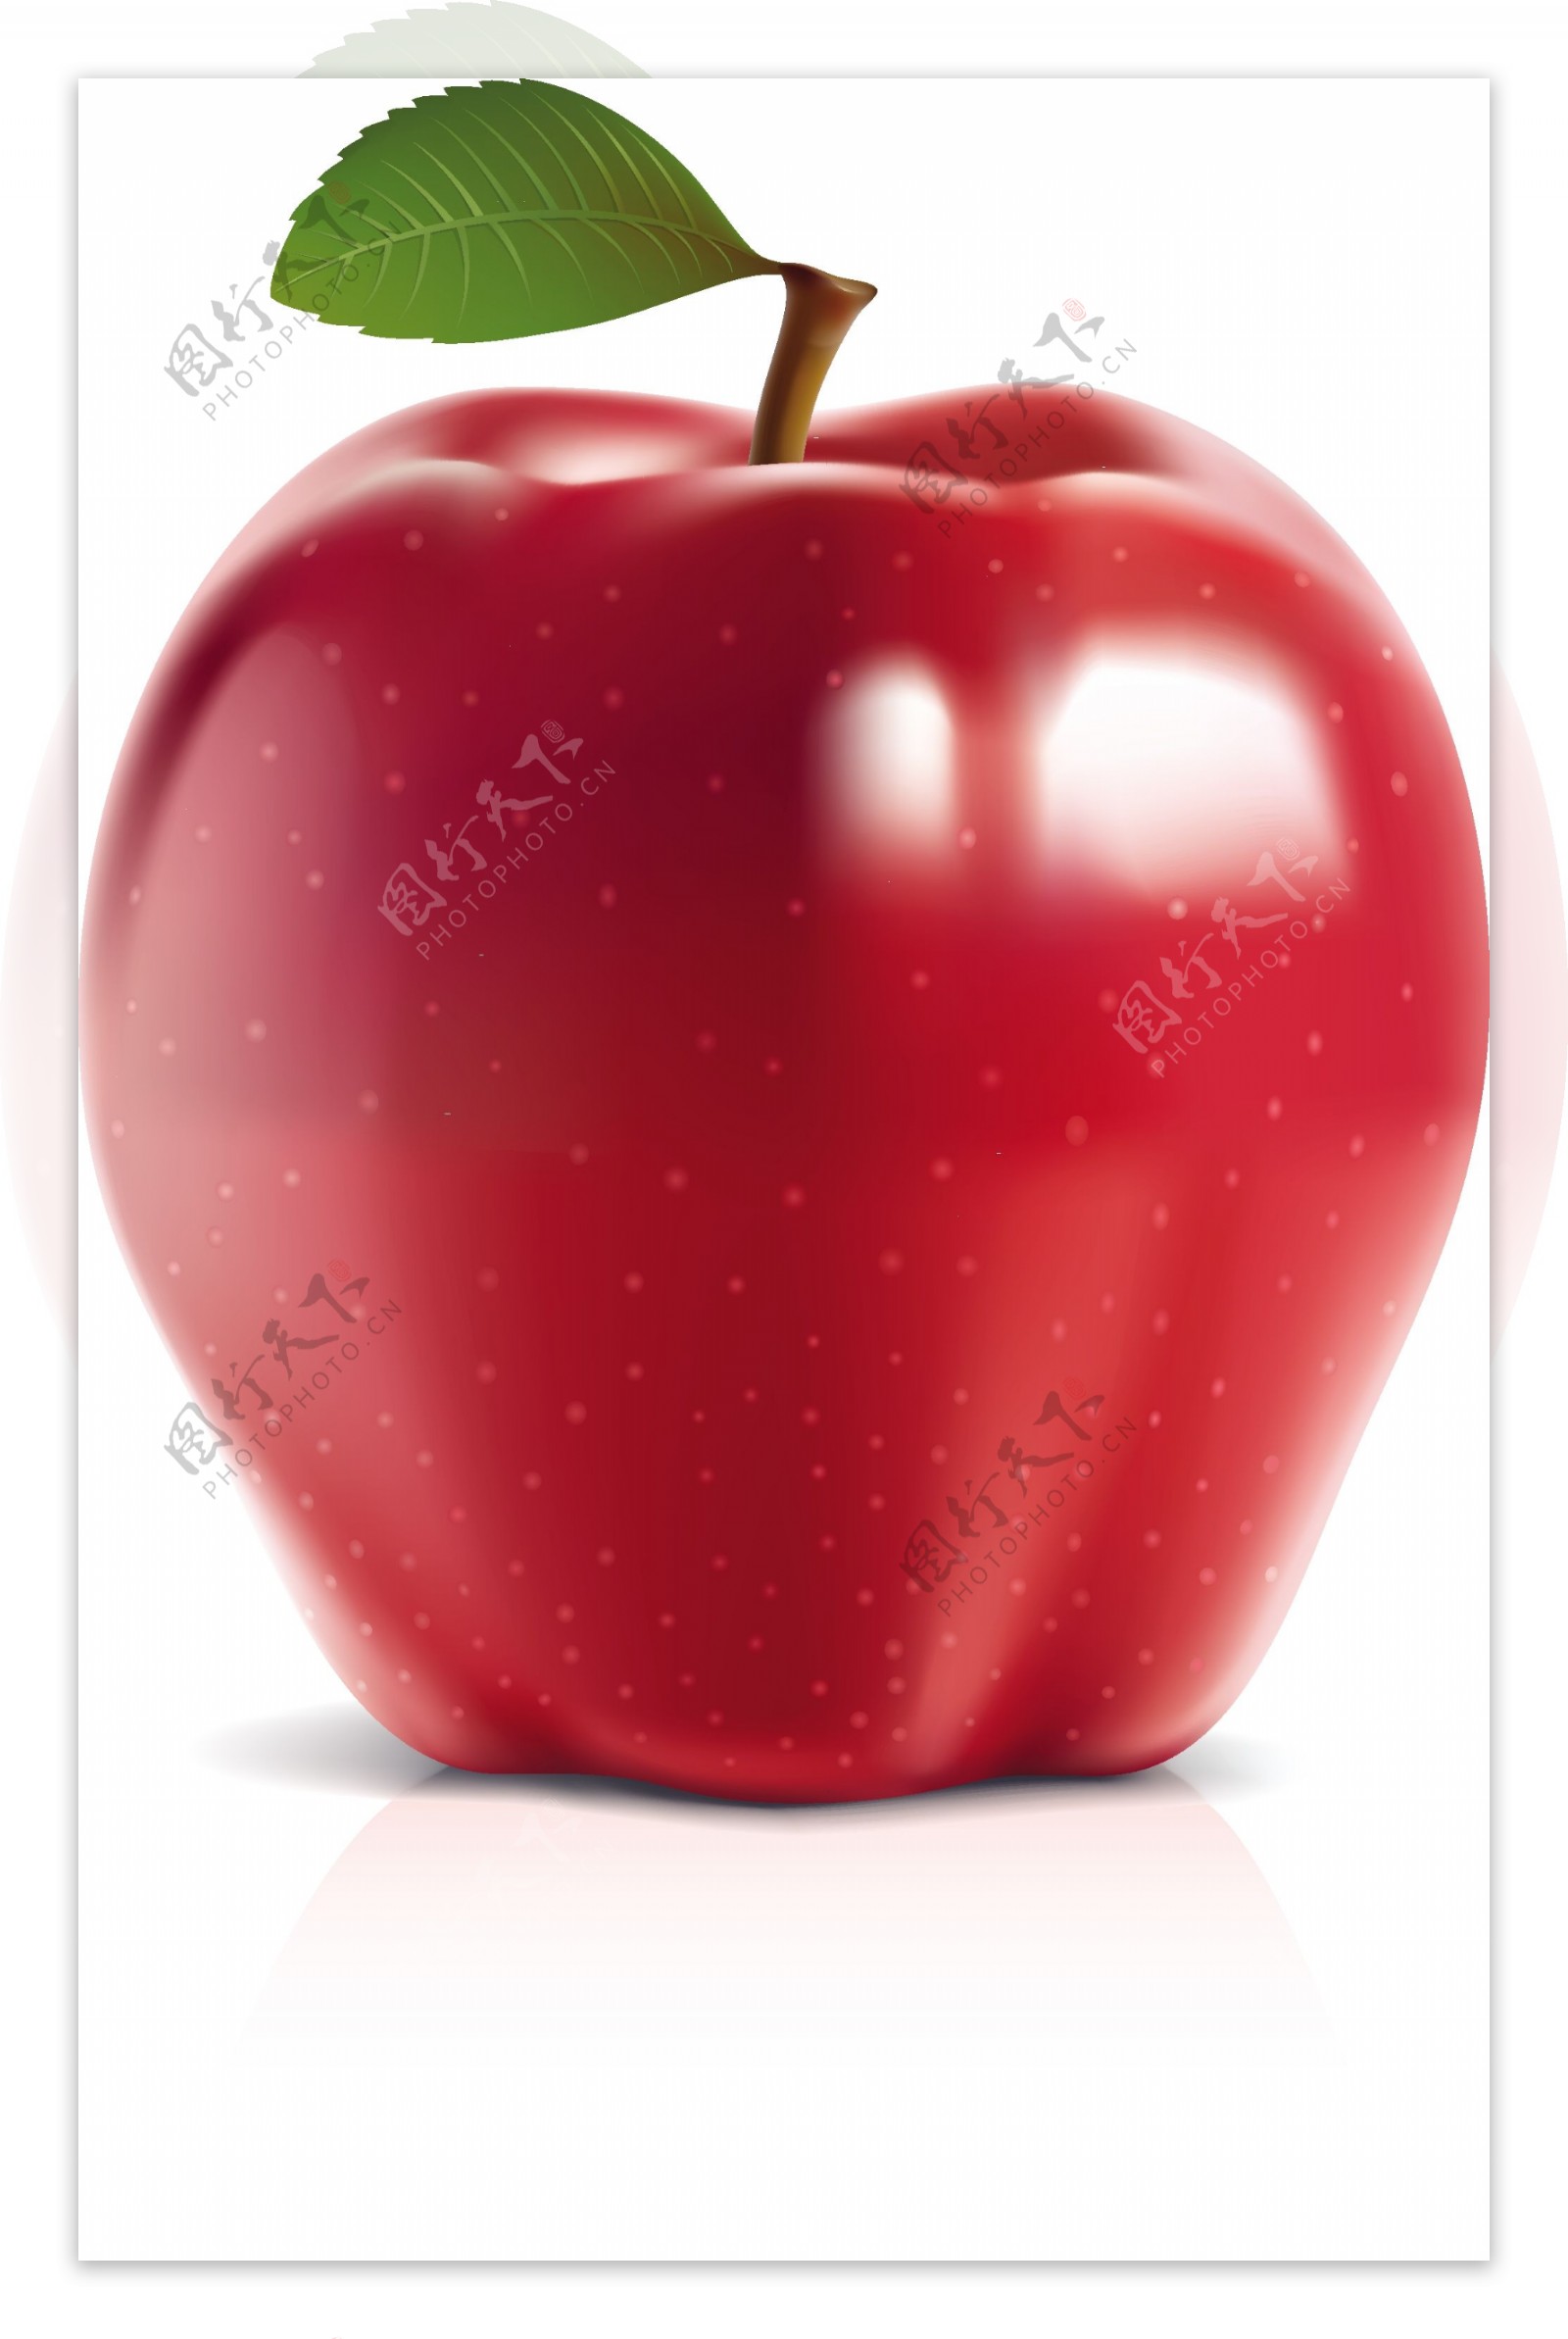 红苹果青苹果